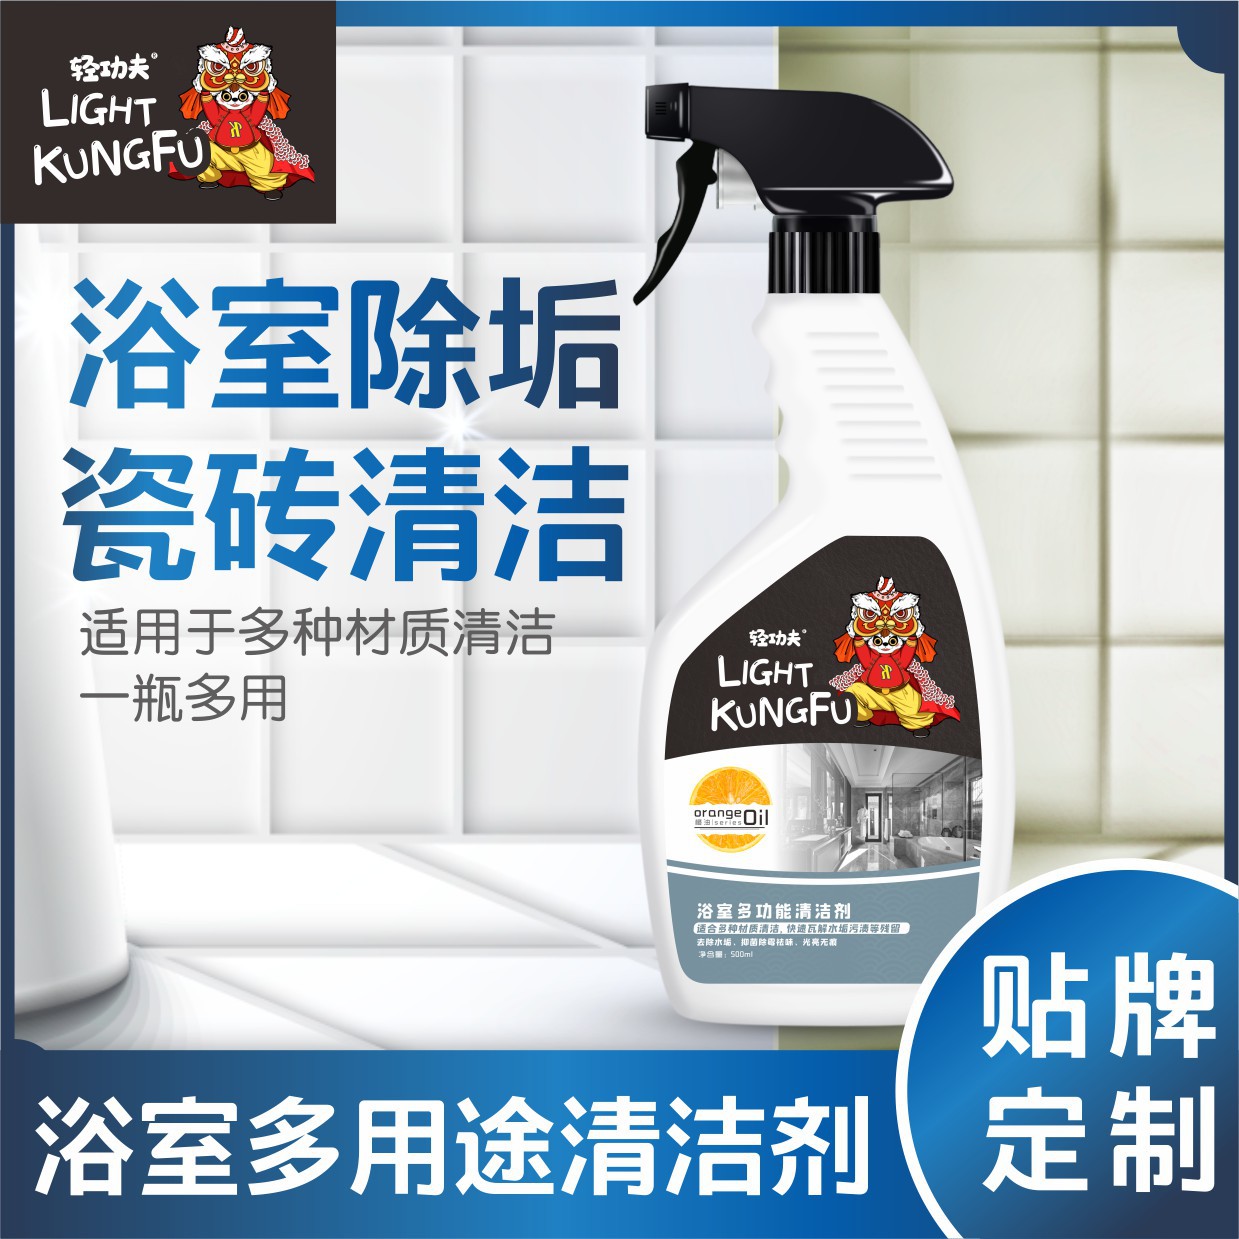 捷色新承(广州)生物科技有限公司 - 浴室瓷砖清洁剂代加工,剂型丰富,性价比高,涵盖功能全面,满足各类市场需求.